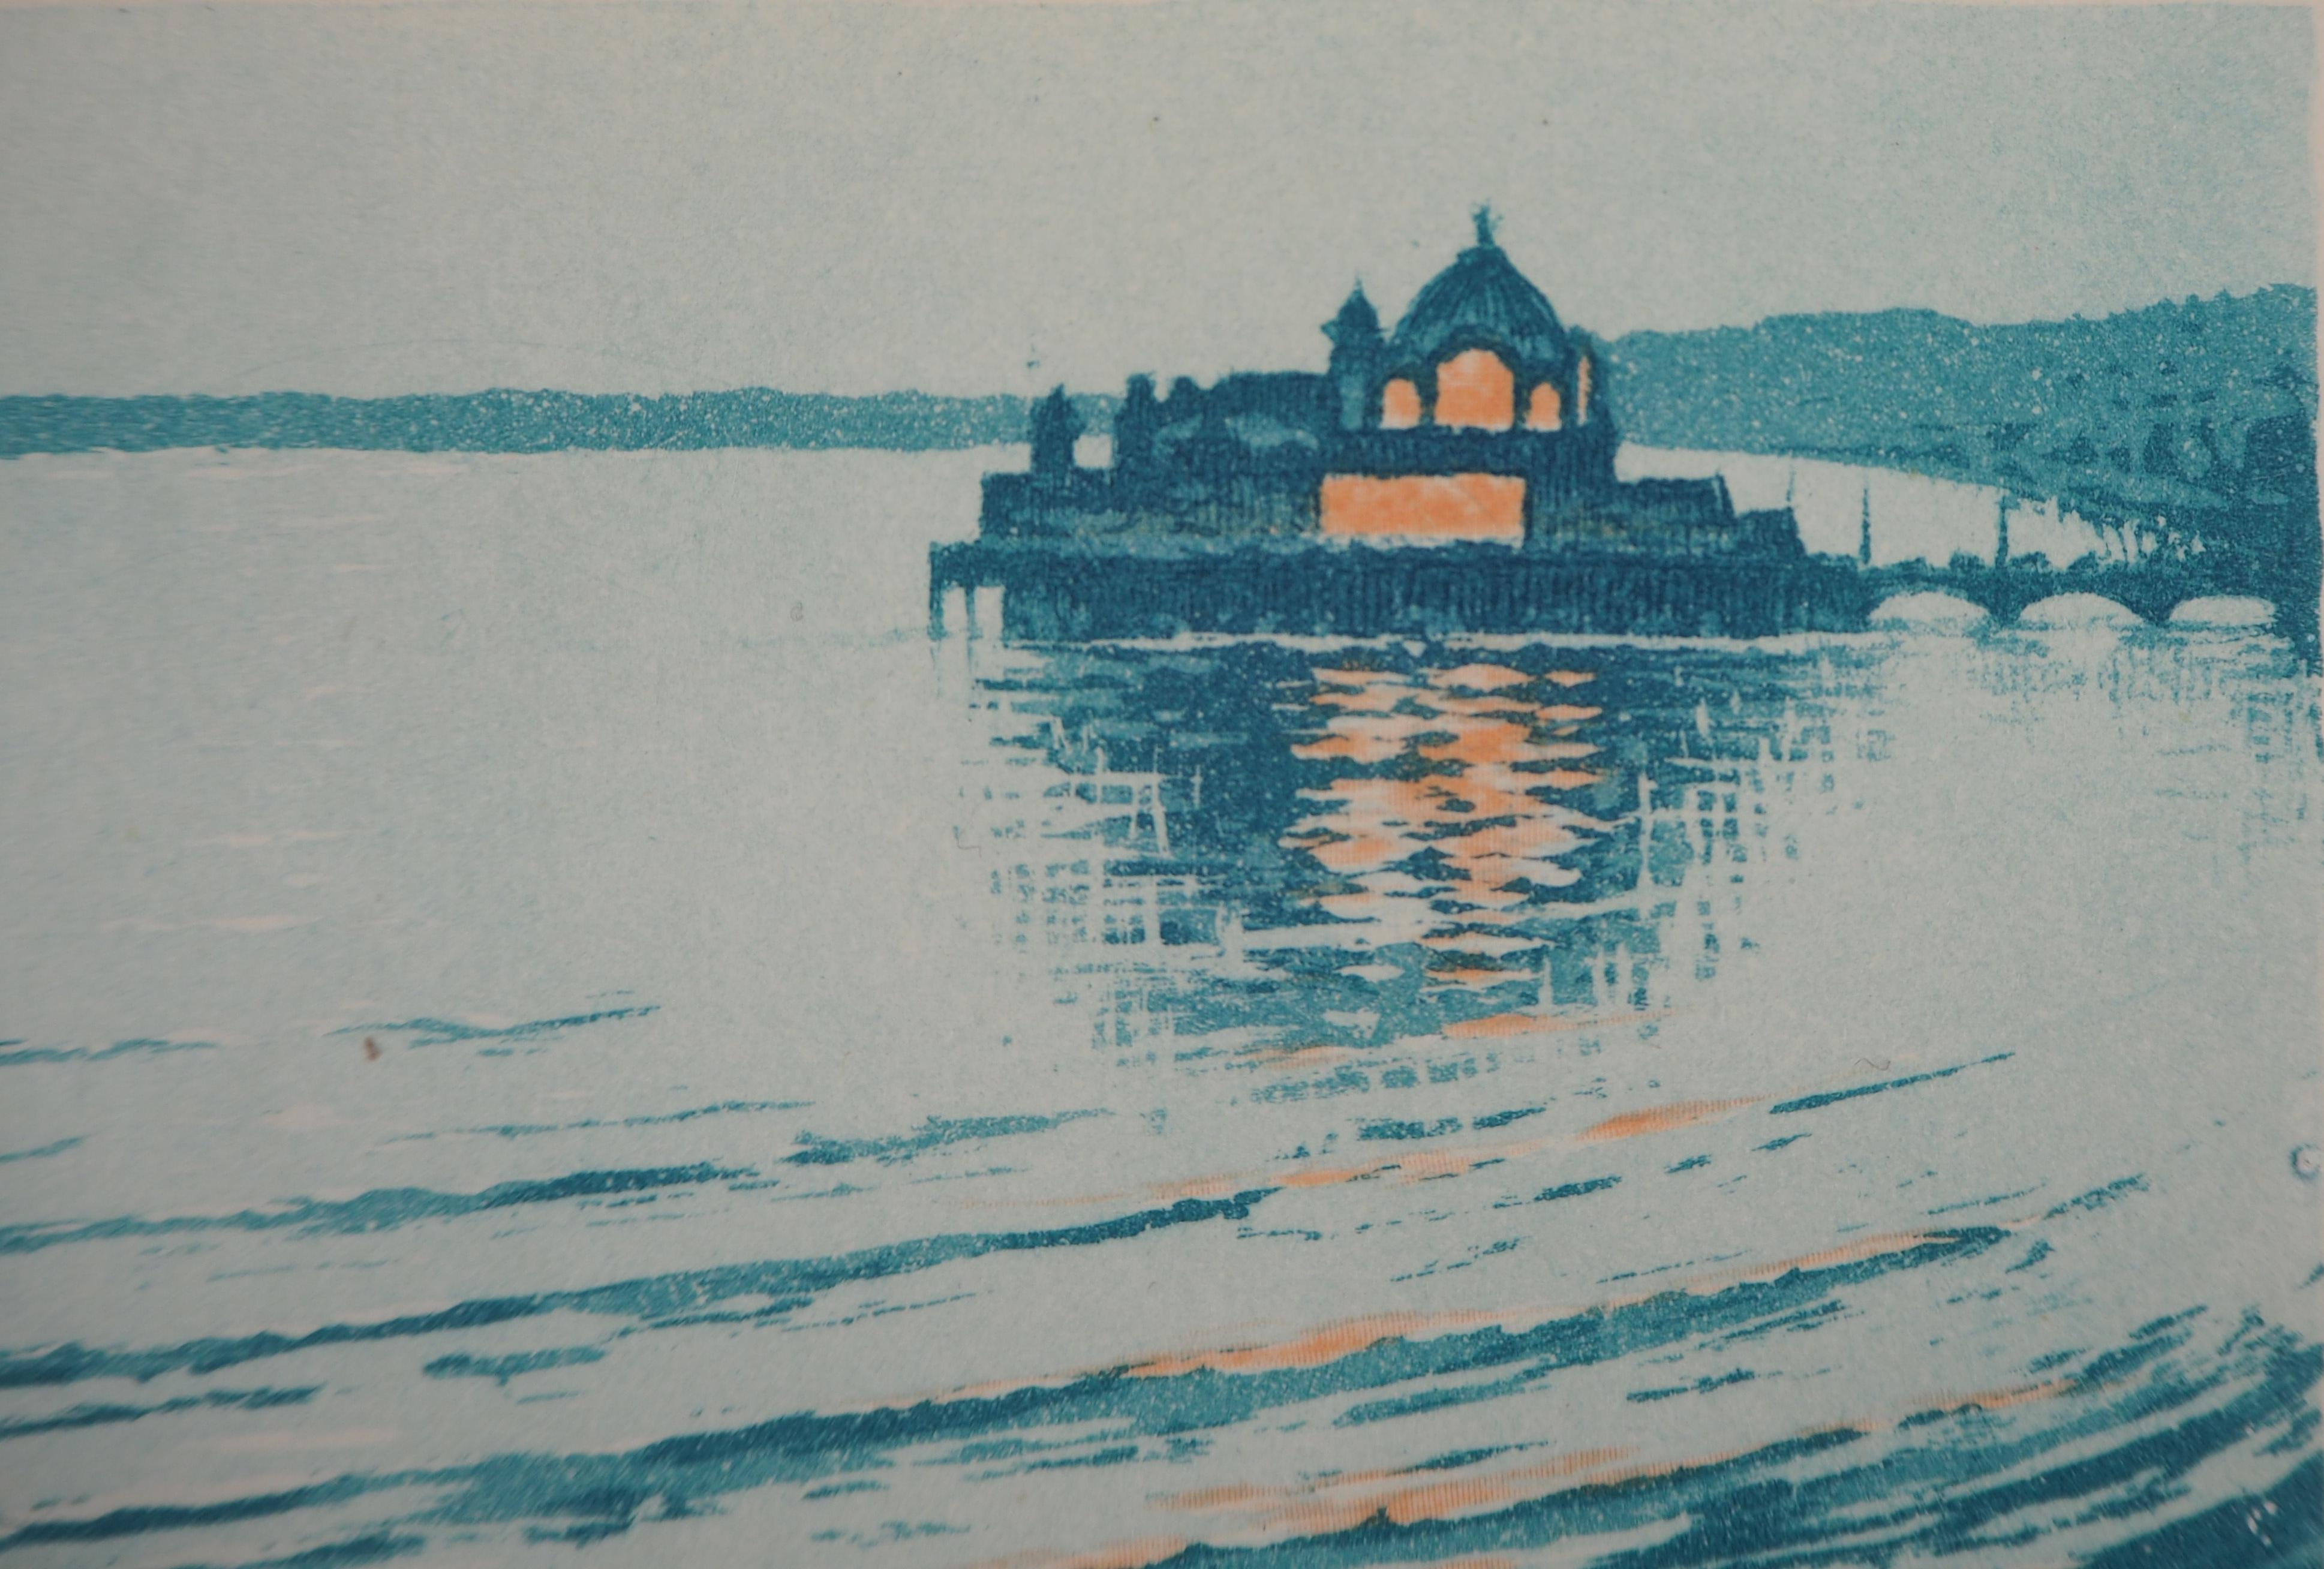 Dream of a Small Venice - Original etching - Art Deco Print by René Ligeron